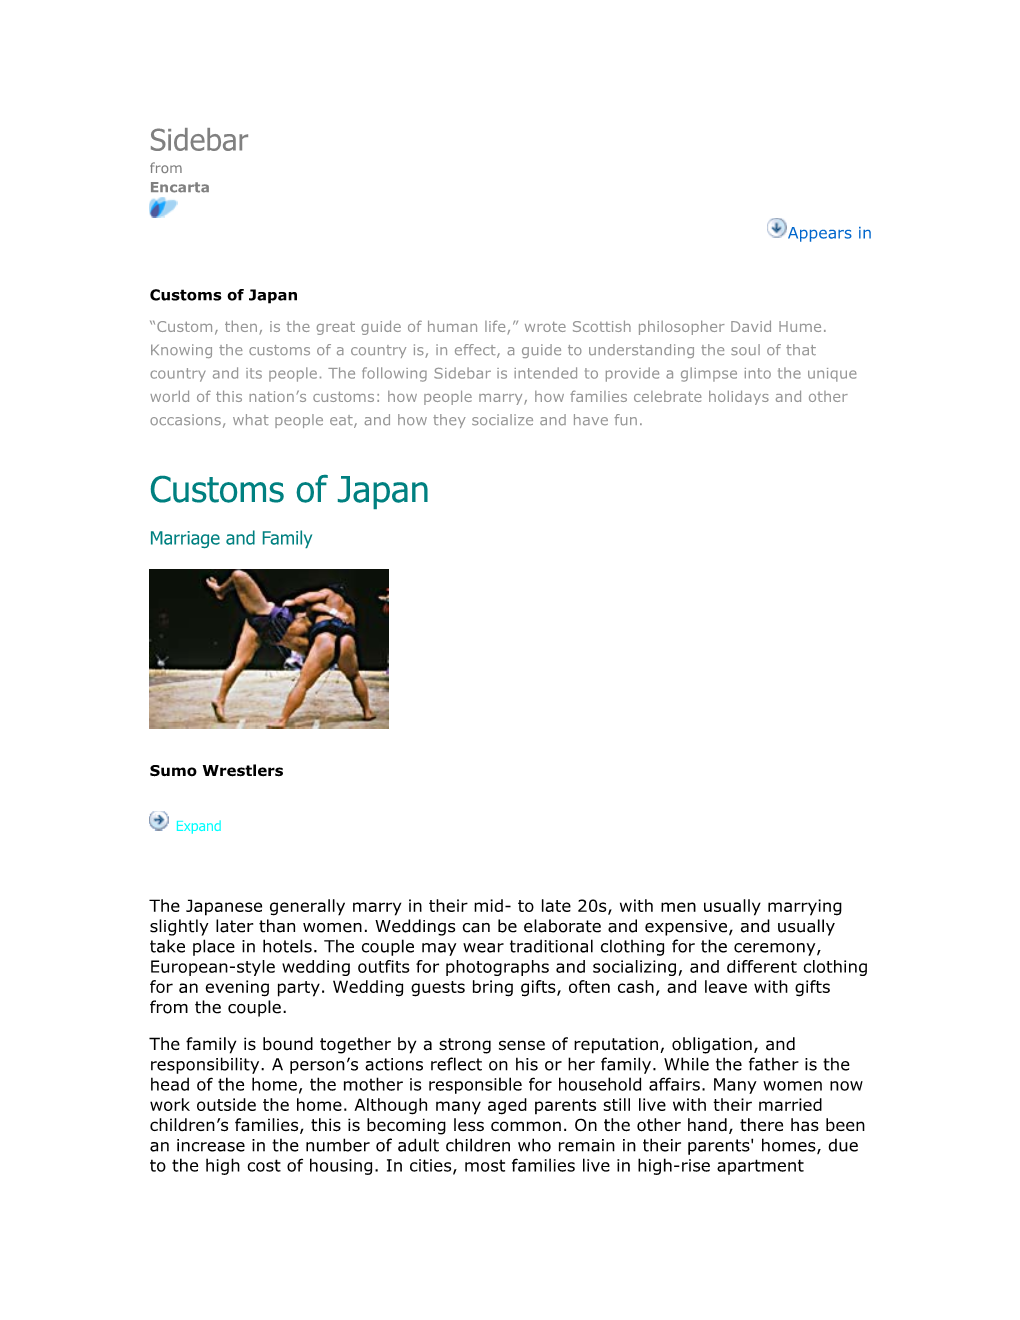 Customs of Japan